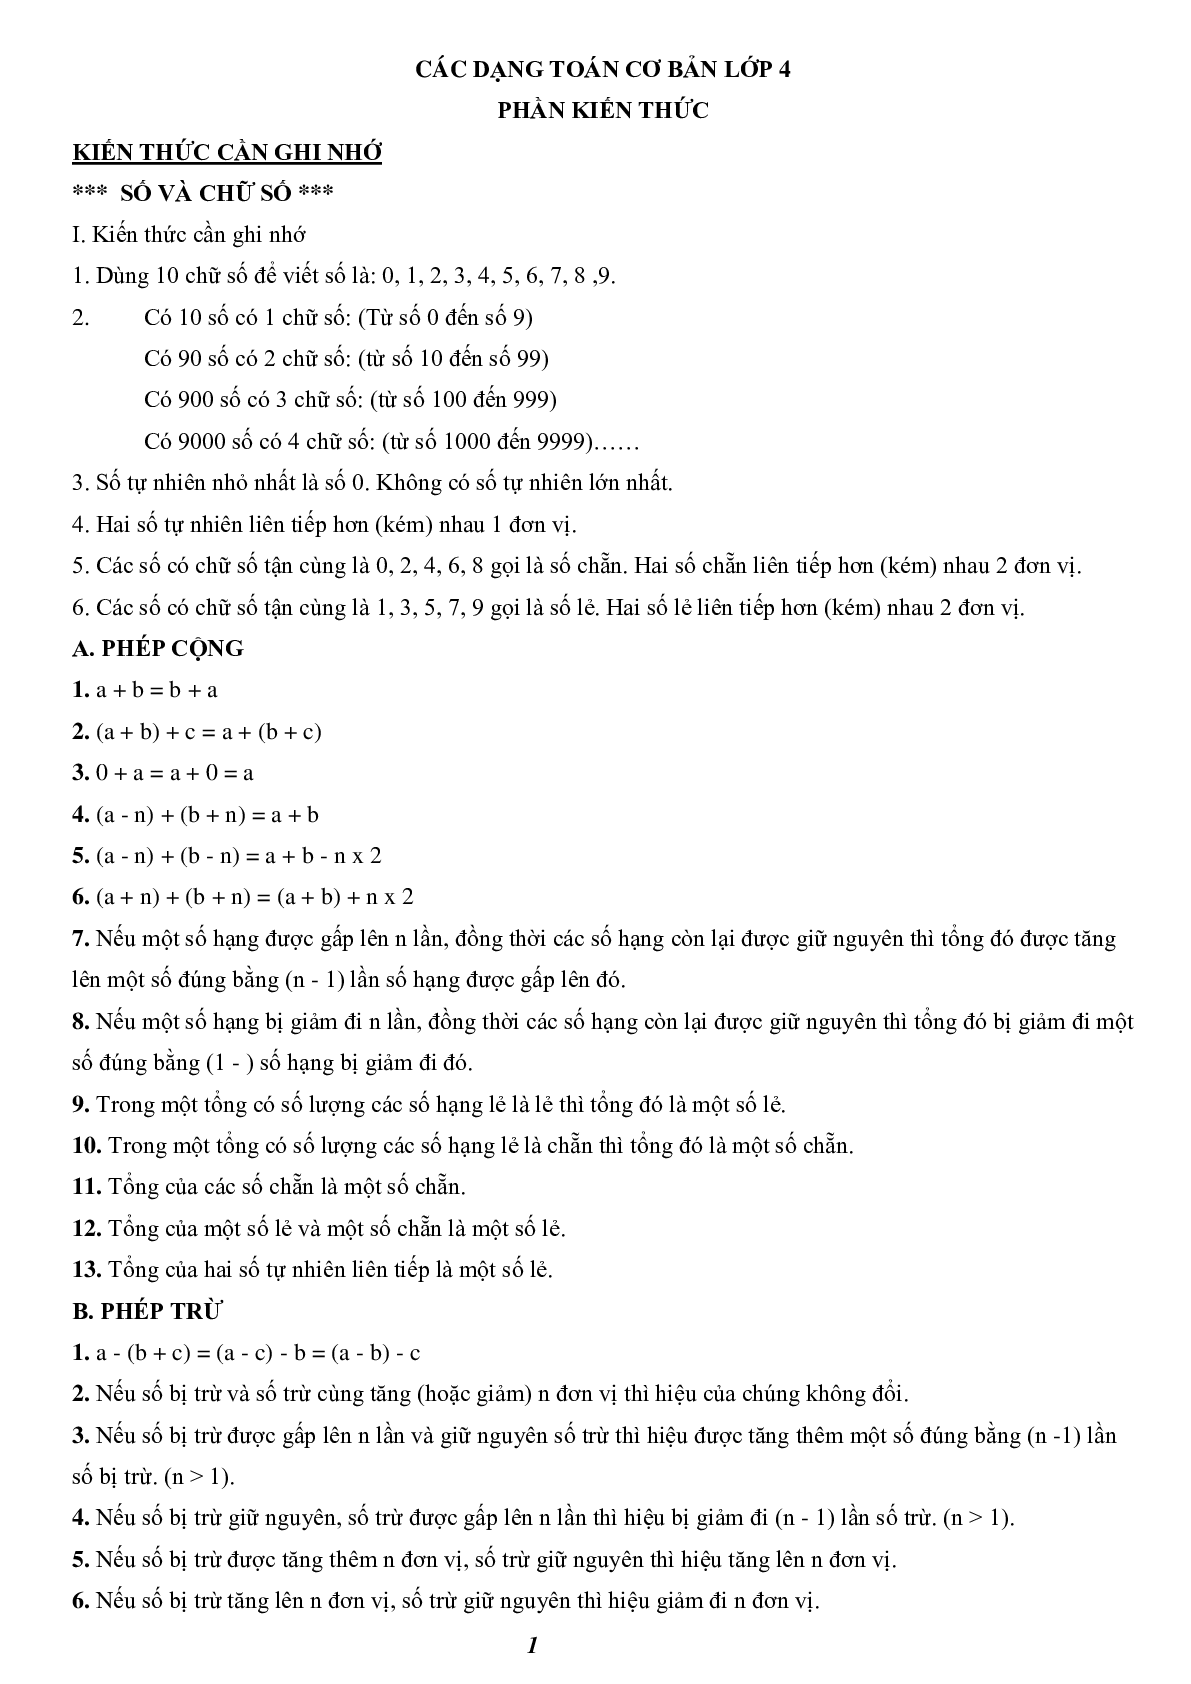 300 bài tập ôn luyện toán lớp 4 (trang 1)